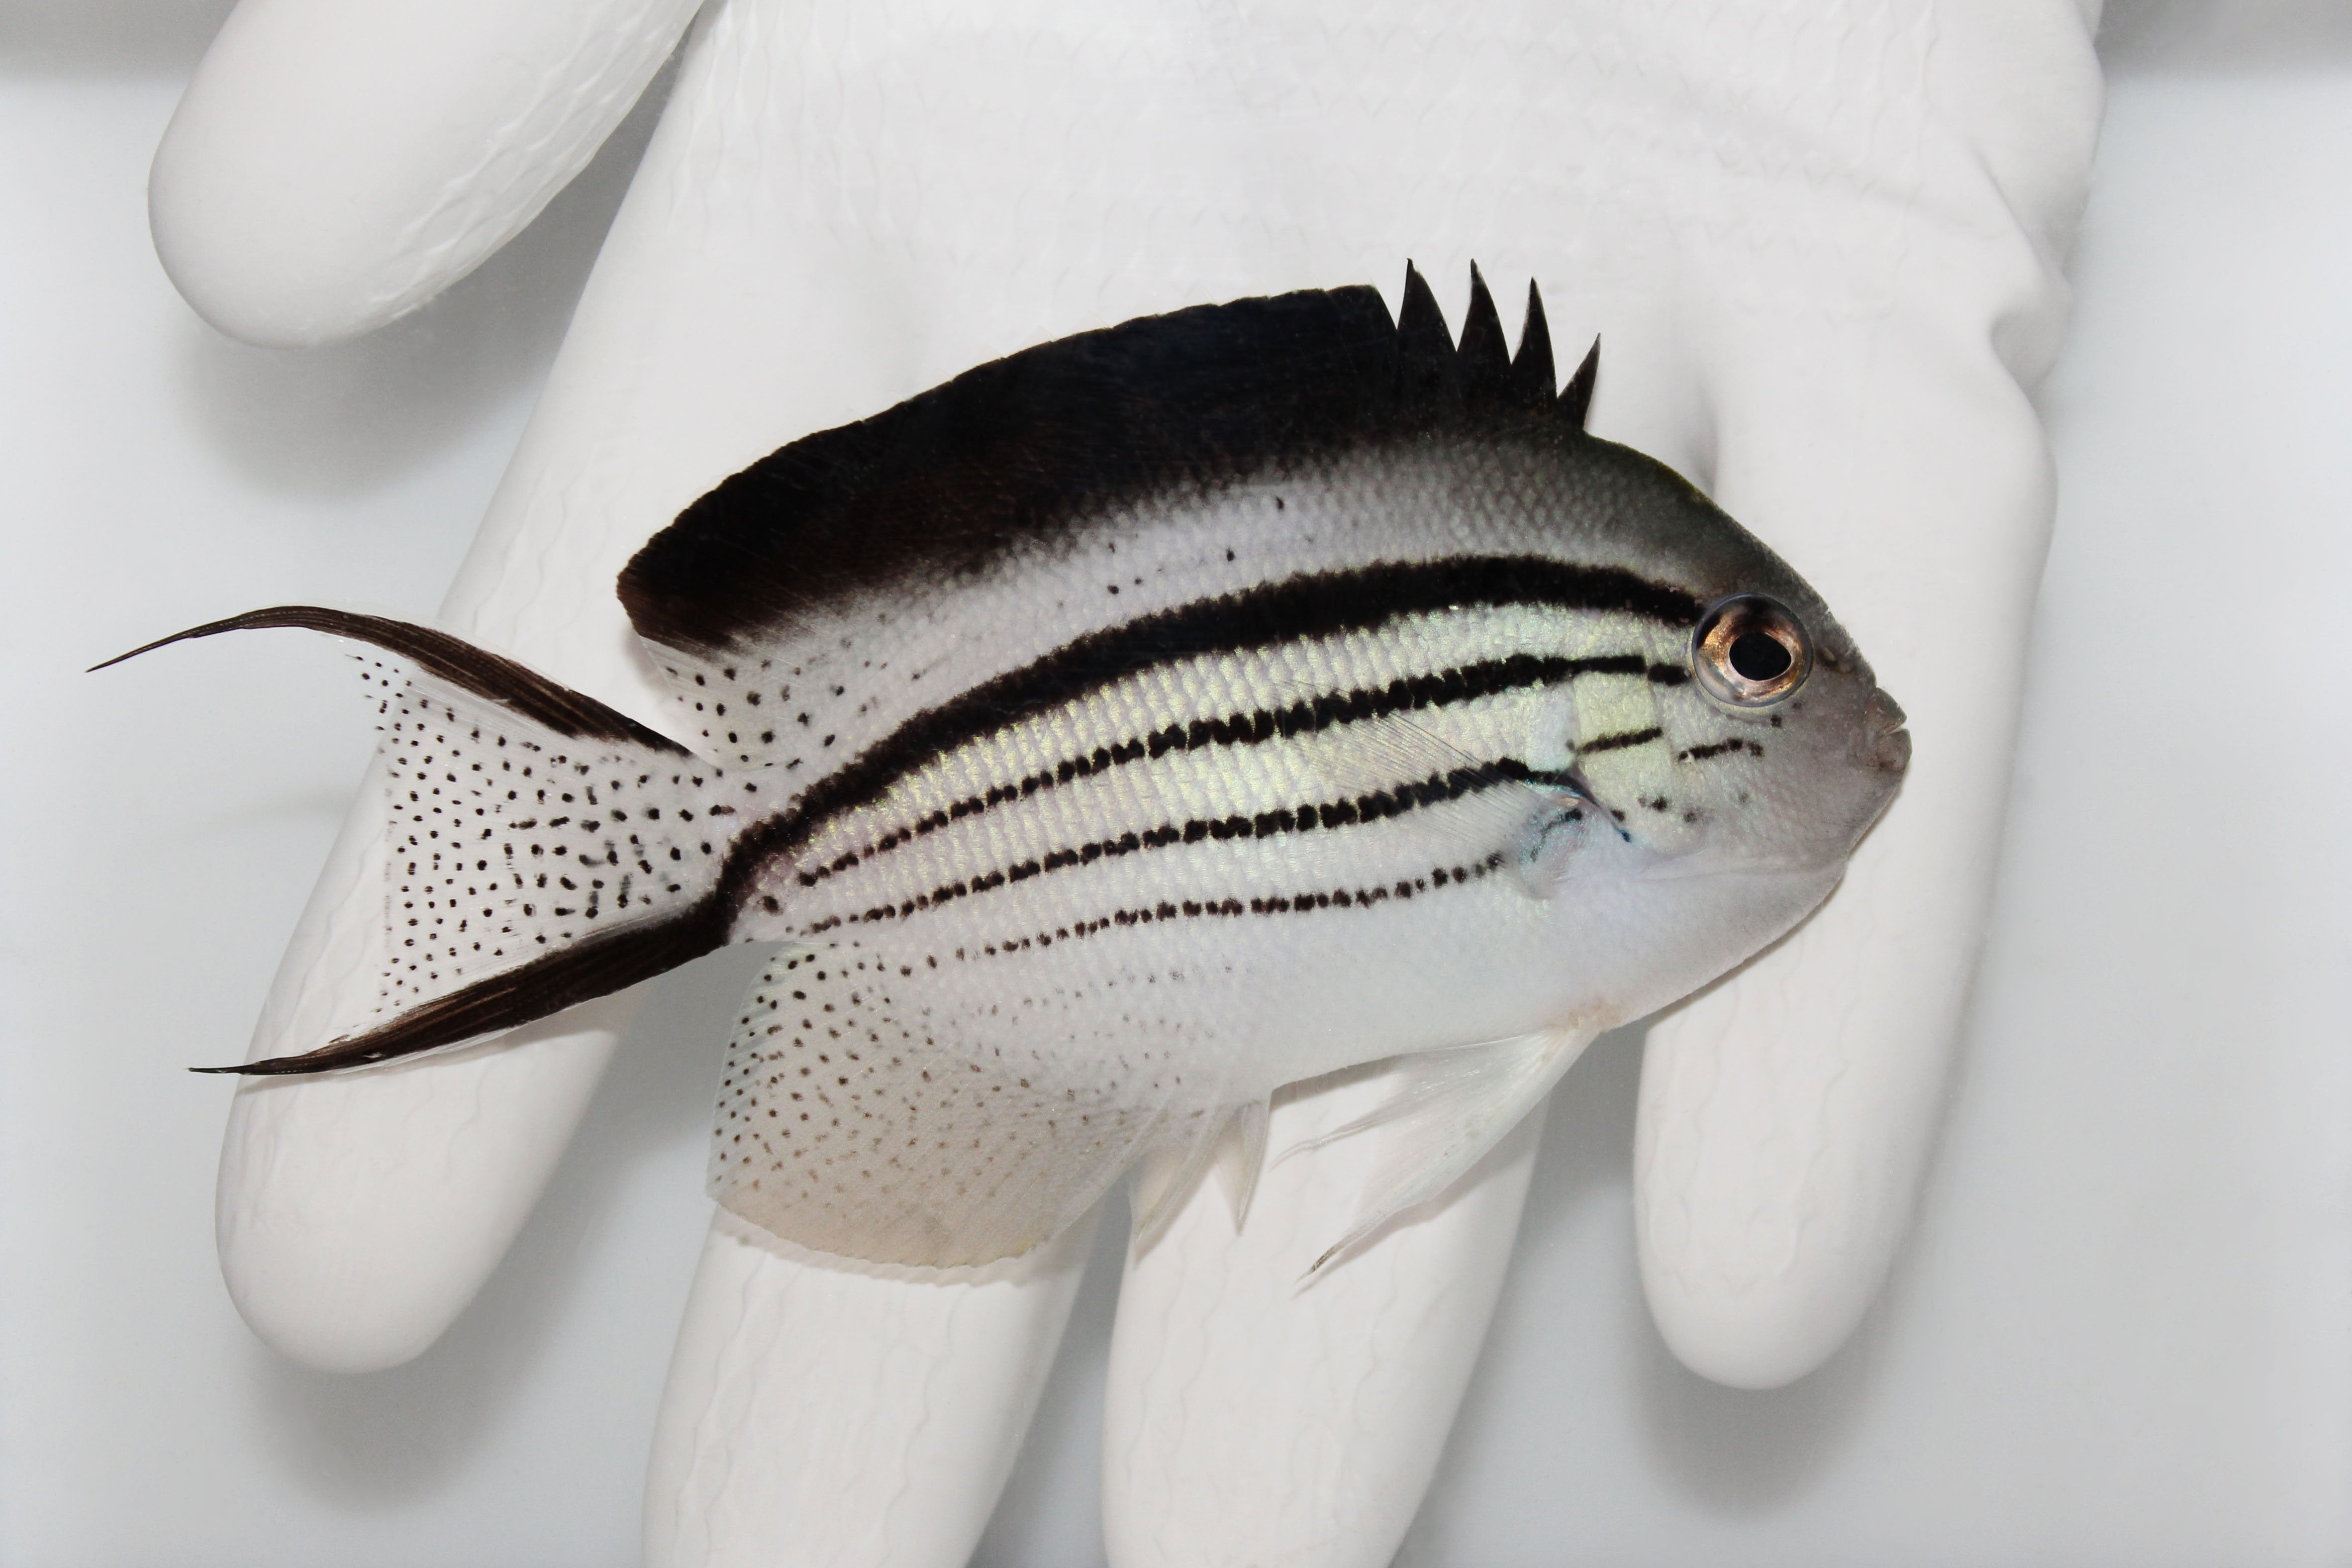 Live Saltwater Fish For Saleluminous Beads Carolina Rig 120pcs